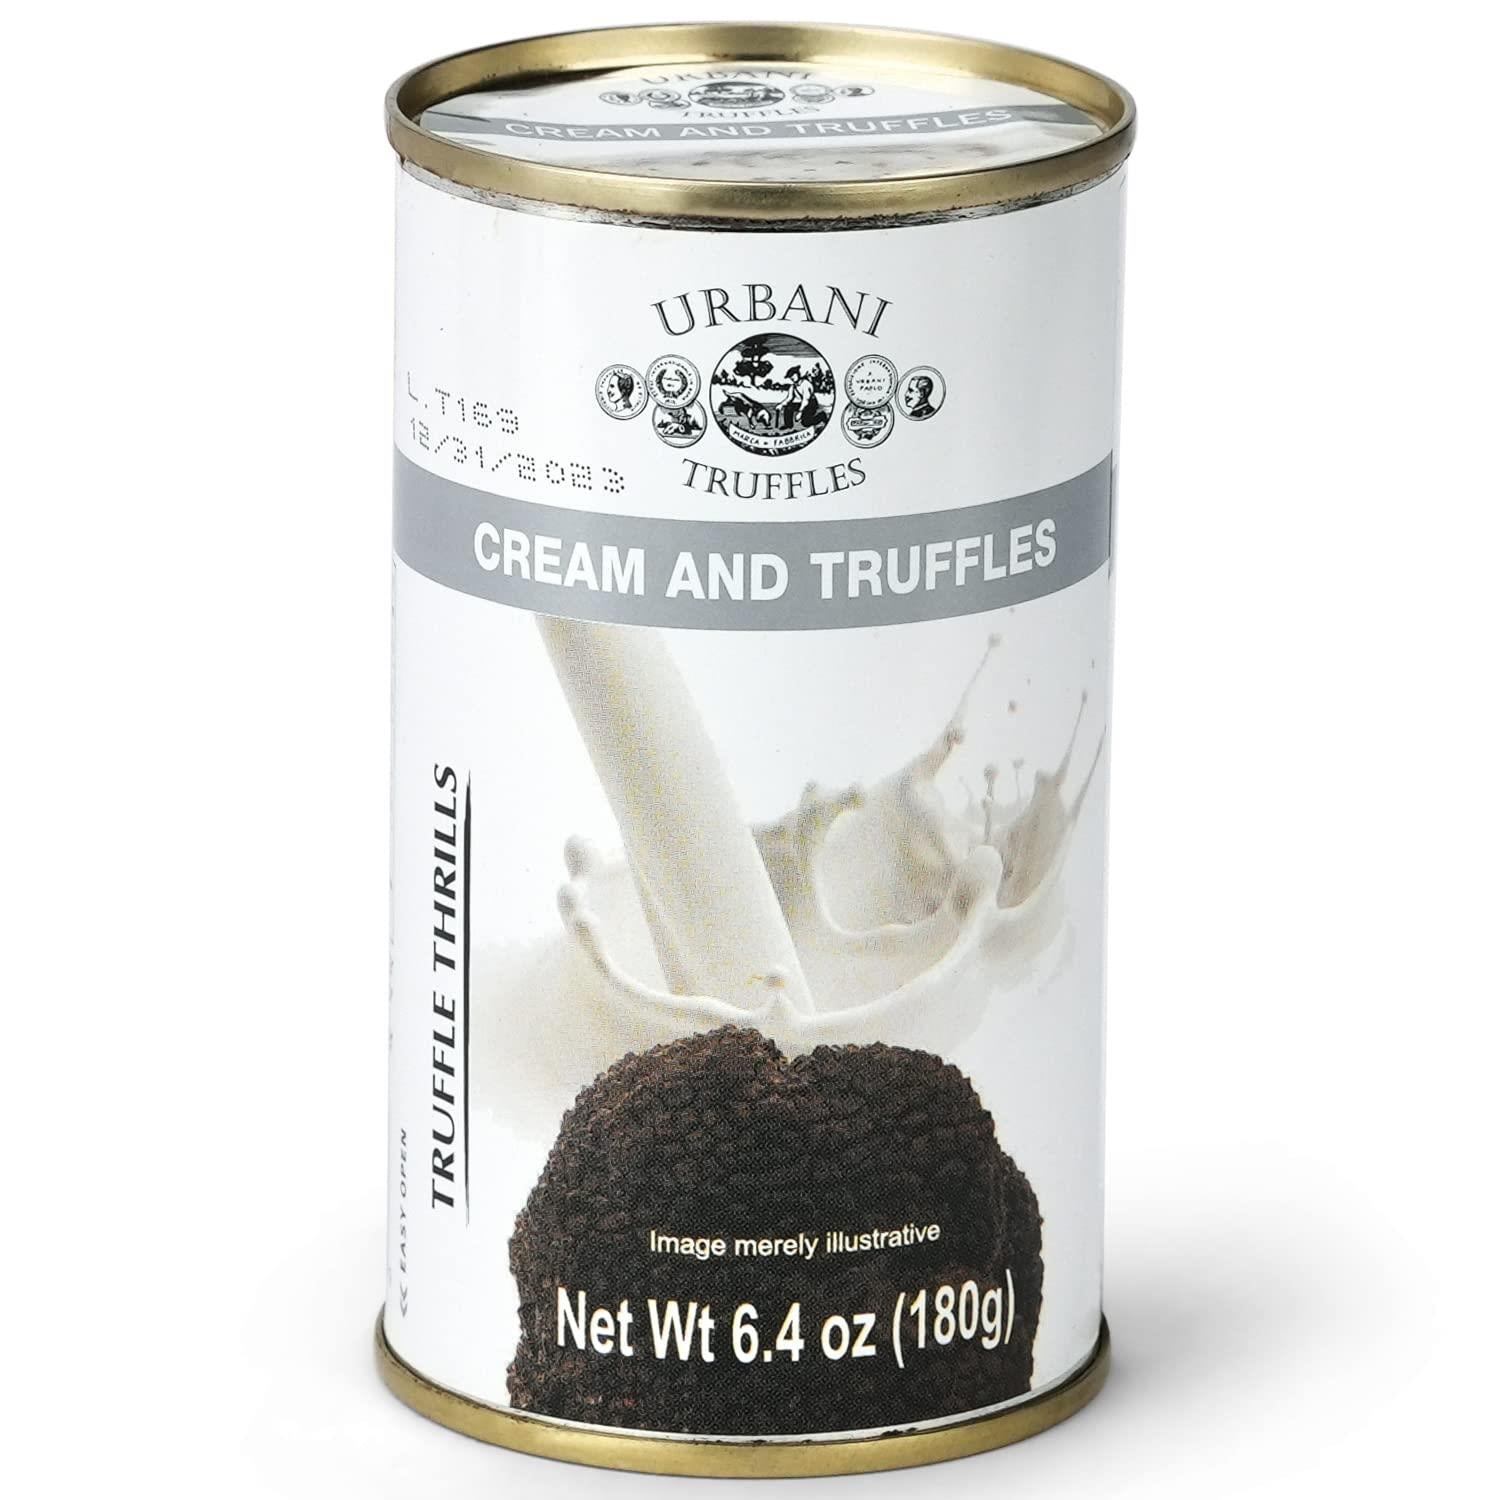 Urbani Truffle Thrills Cream and Truffles - 2 pack x 6.4 oz